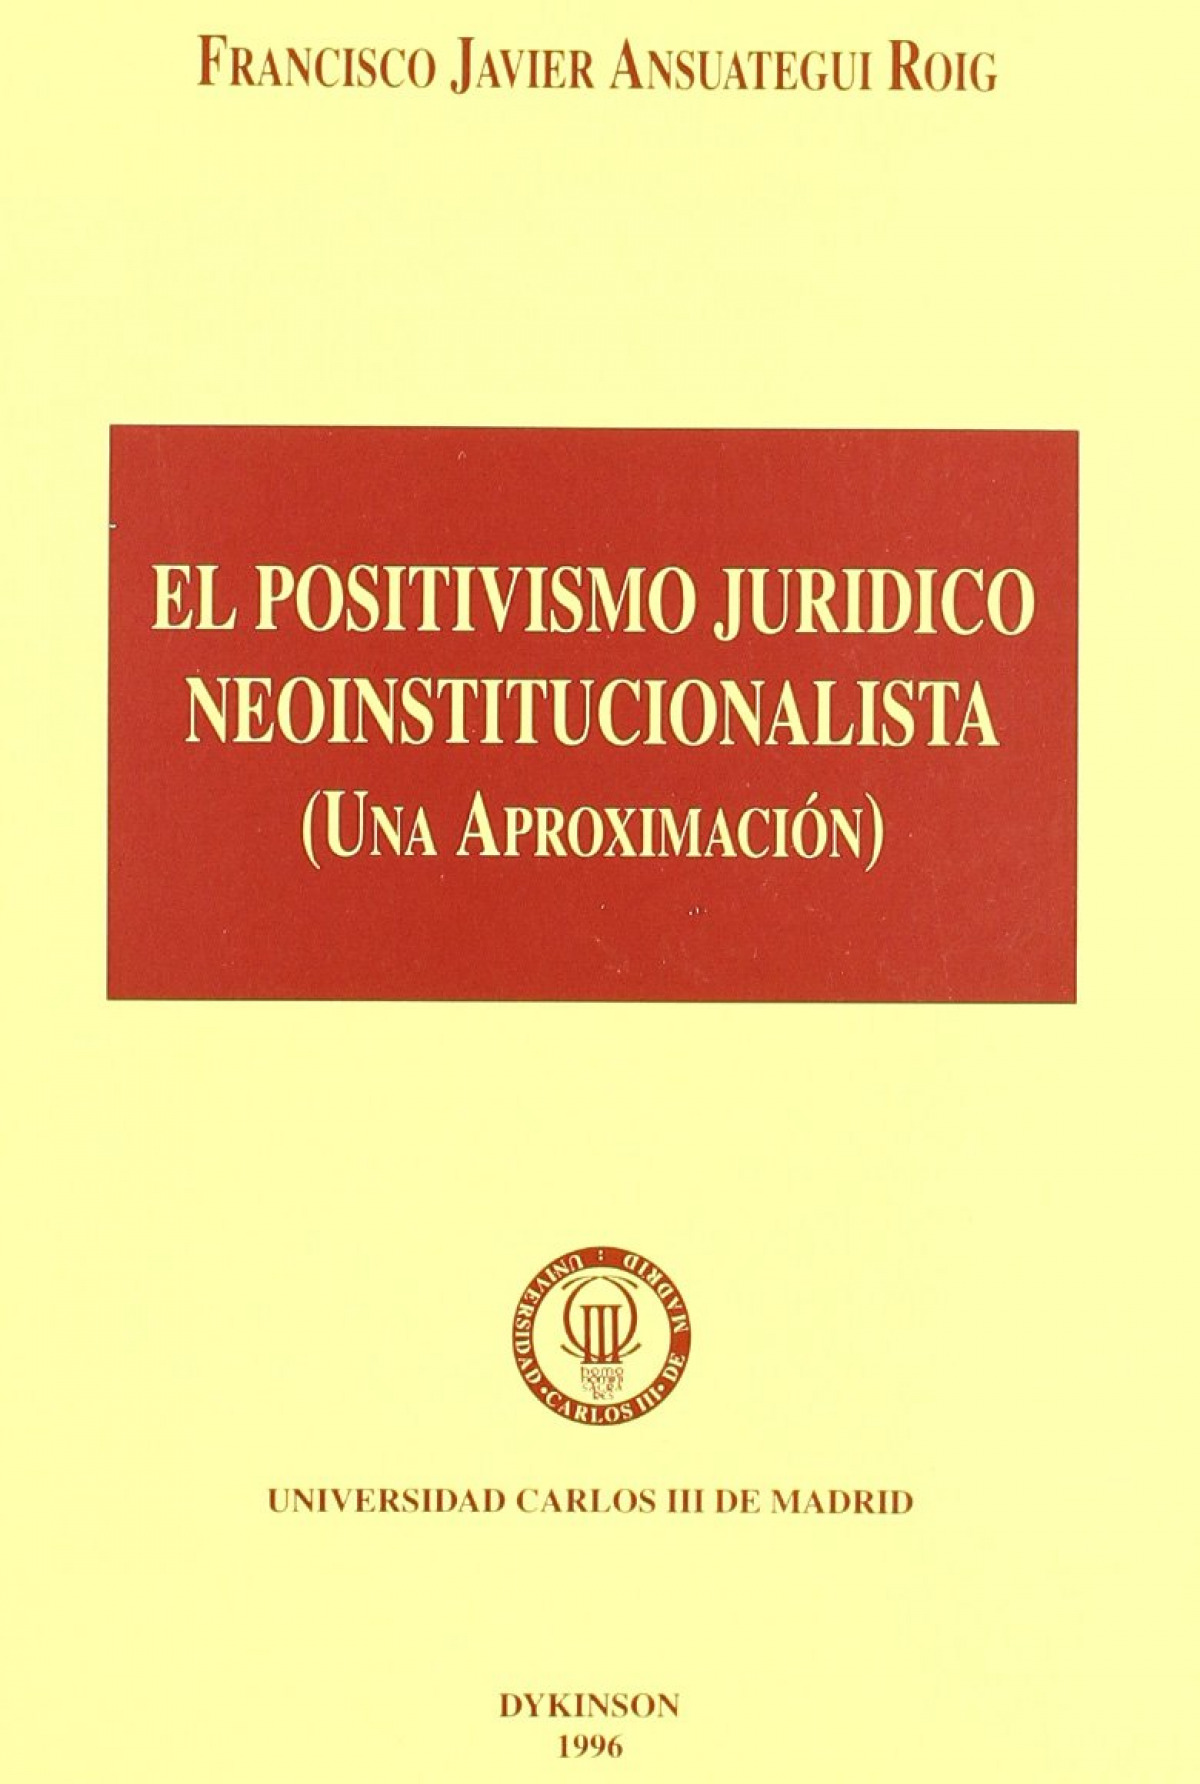 El positivismo jurídico neoinstitucionalista - Ansuategui Roig, F.J.